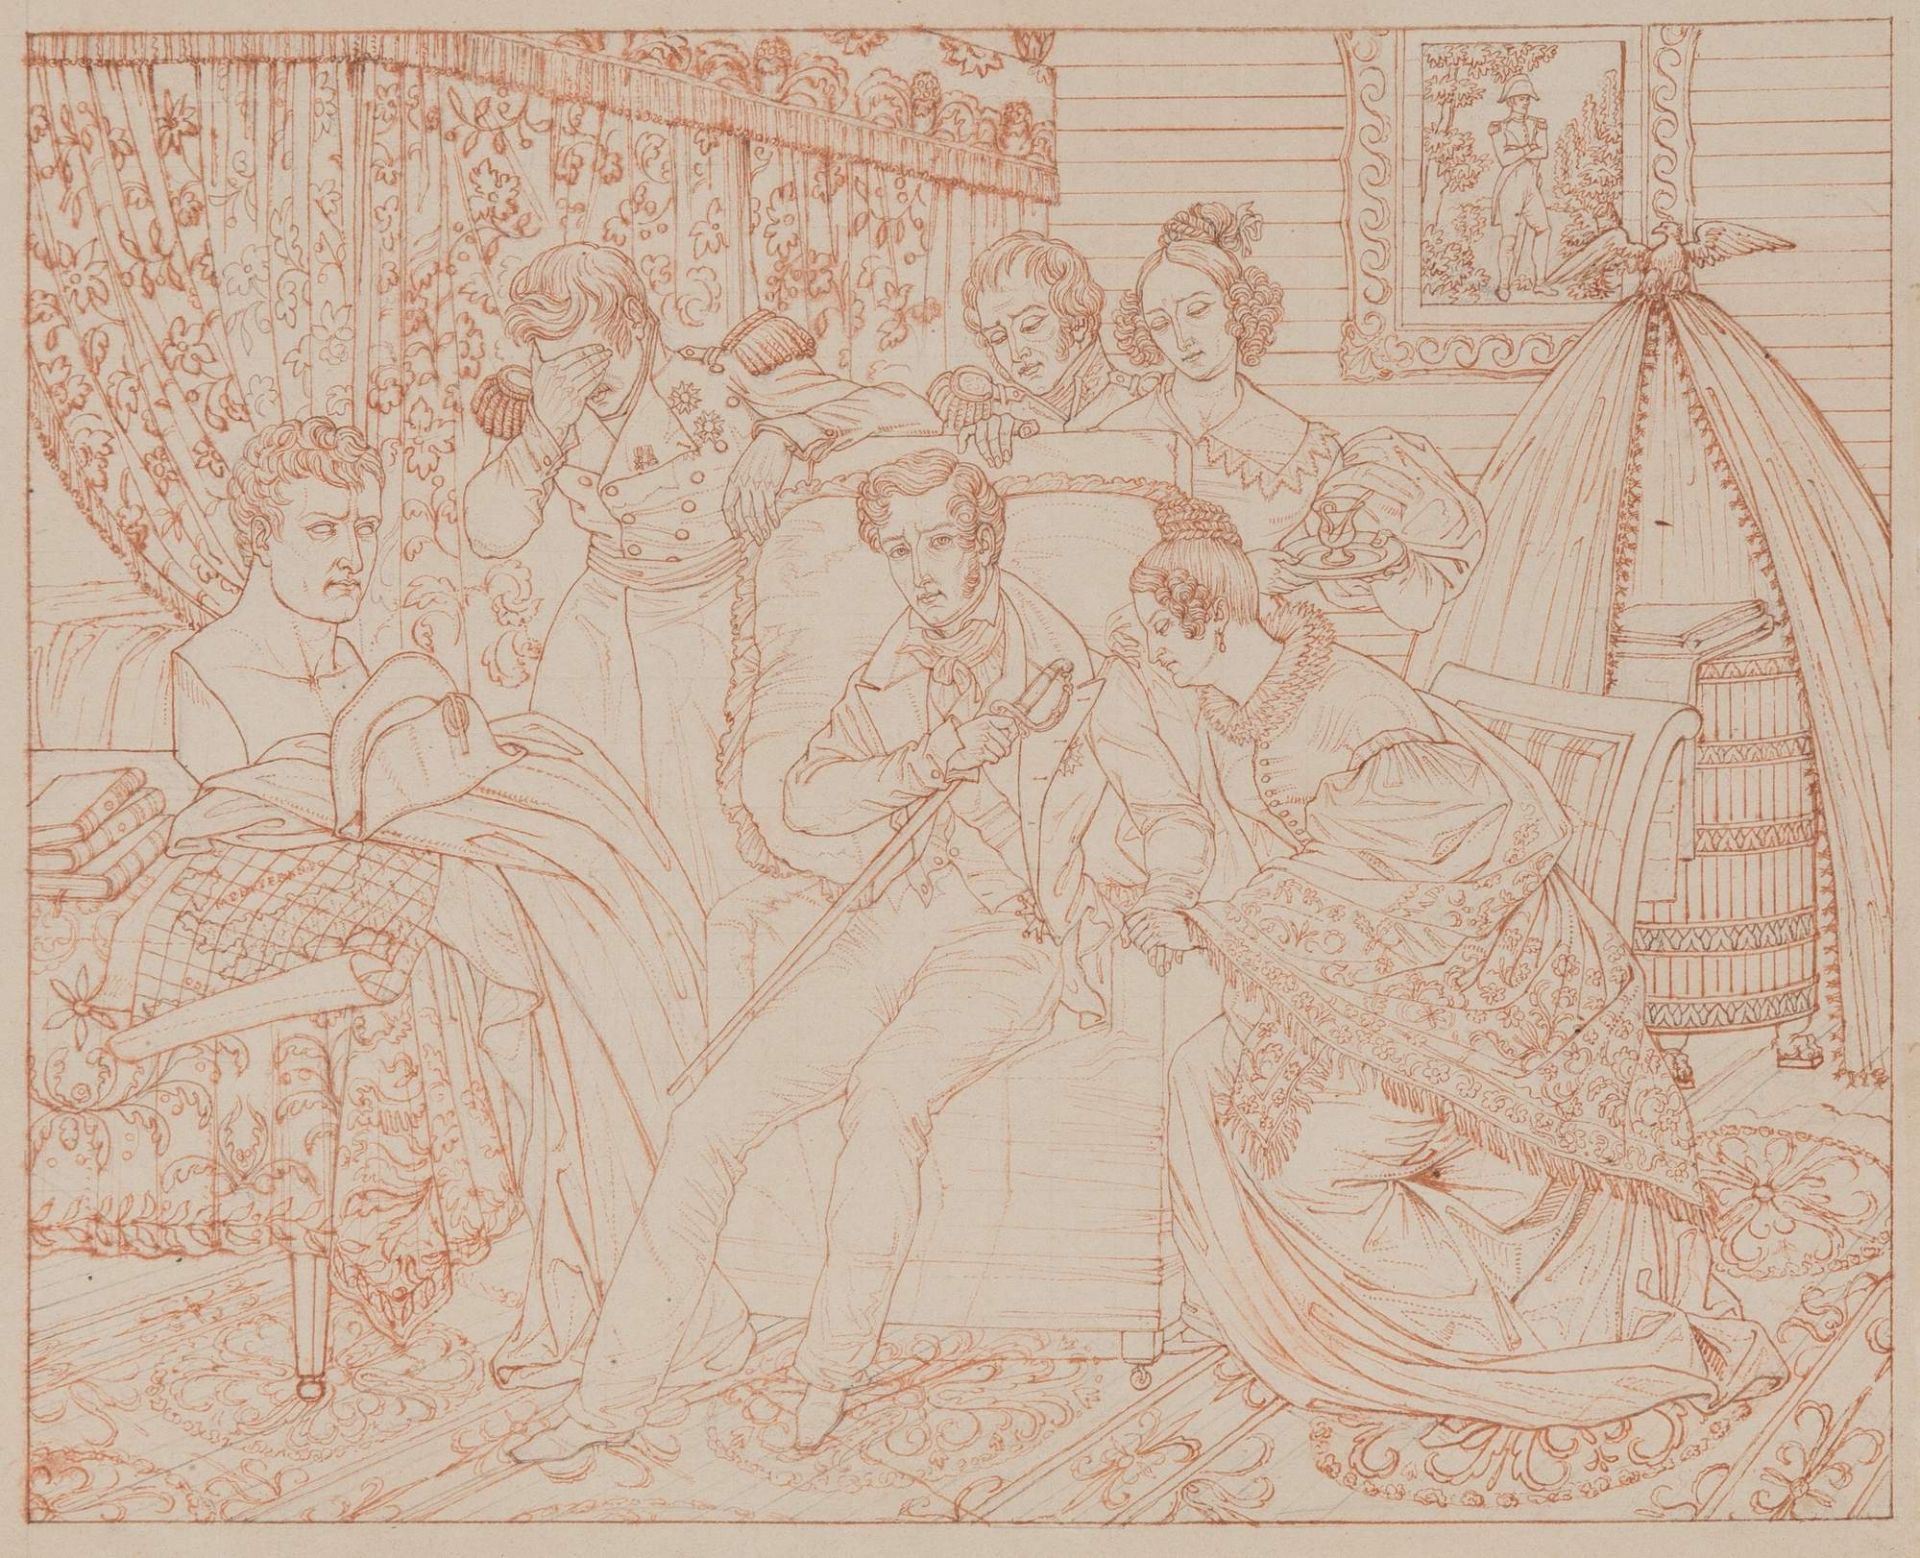 ARTURO MENDESPON (Zabrina 1797 – Parigi 1882), attr. “La morte del re di Roma”. China su carta. Cm